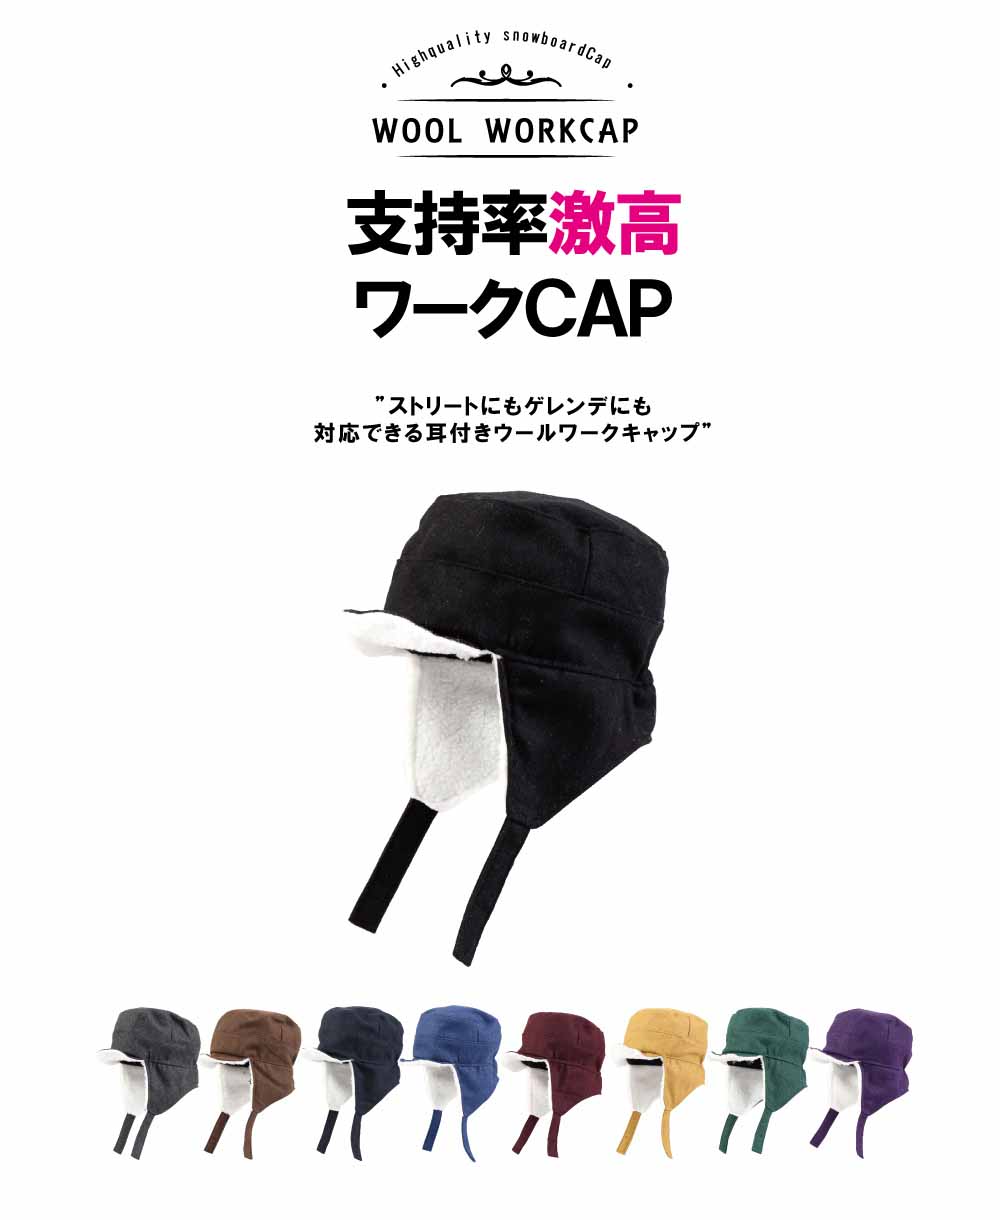 Boa WorkCap With Ear/裏BOA耳付きワークキャップ snj-141 【ゆう